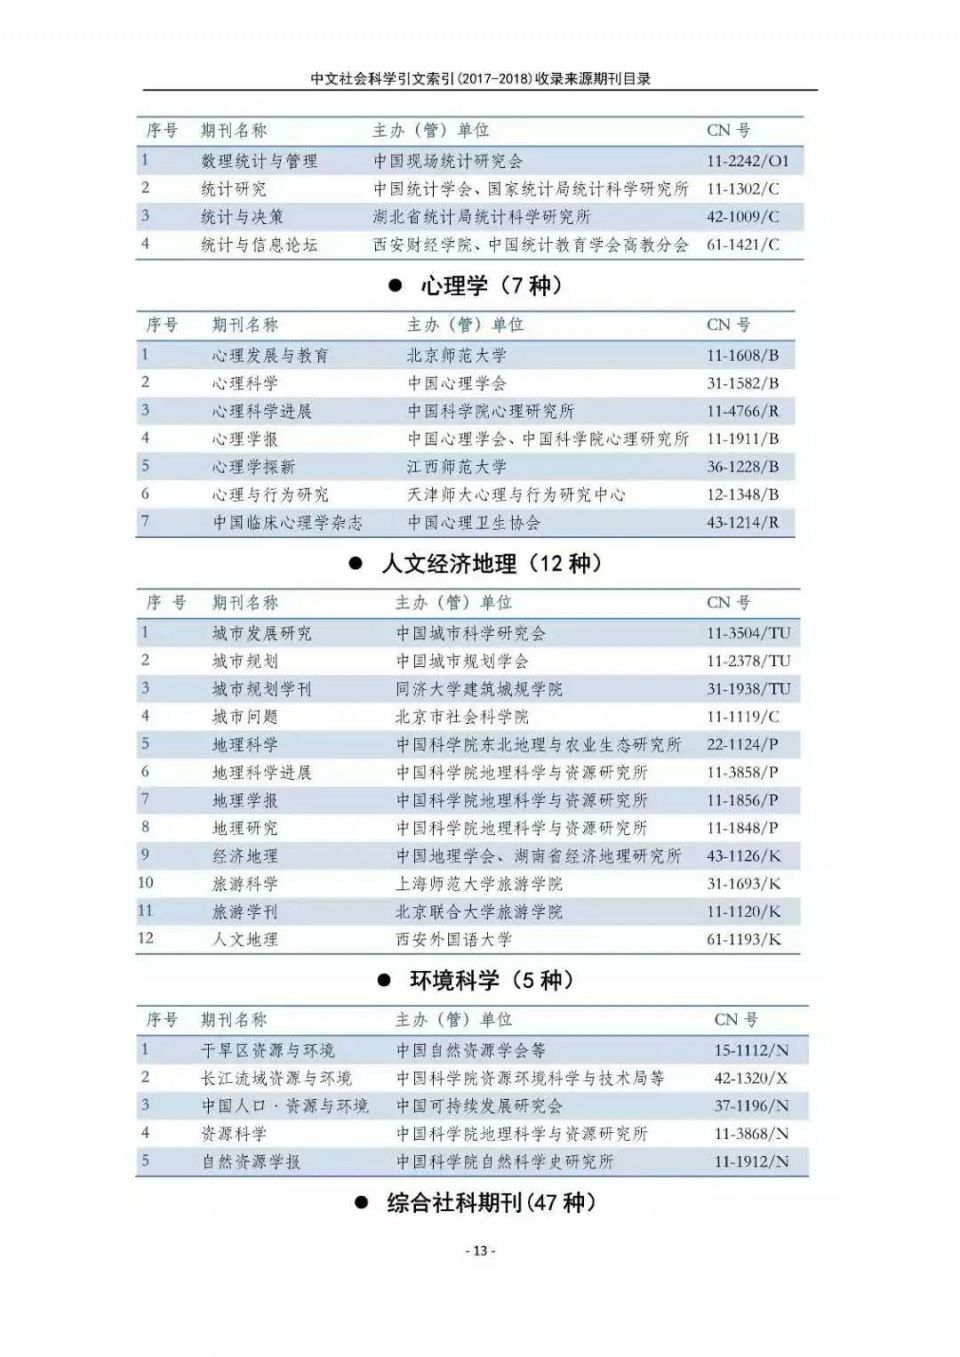 南大核心CSSCI官网发布最新名单!